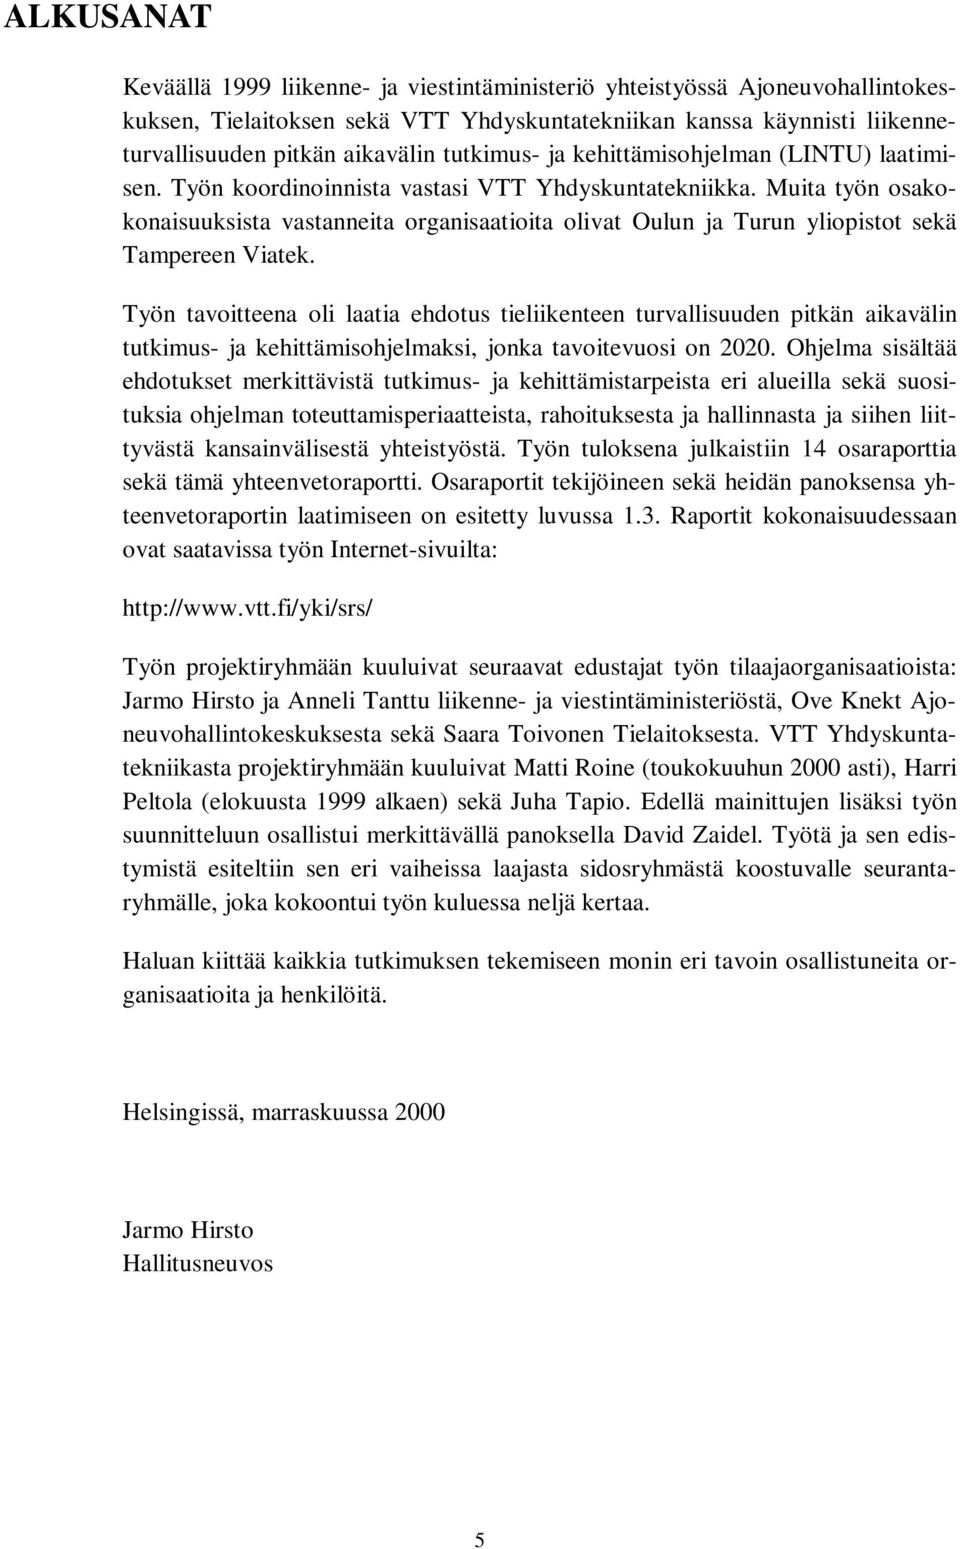 Muita työn osakokonaisuuksista vastanneita organisaatioita olivat Oulun ja Turun yliopistot sekä Tampereen Viatek.